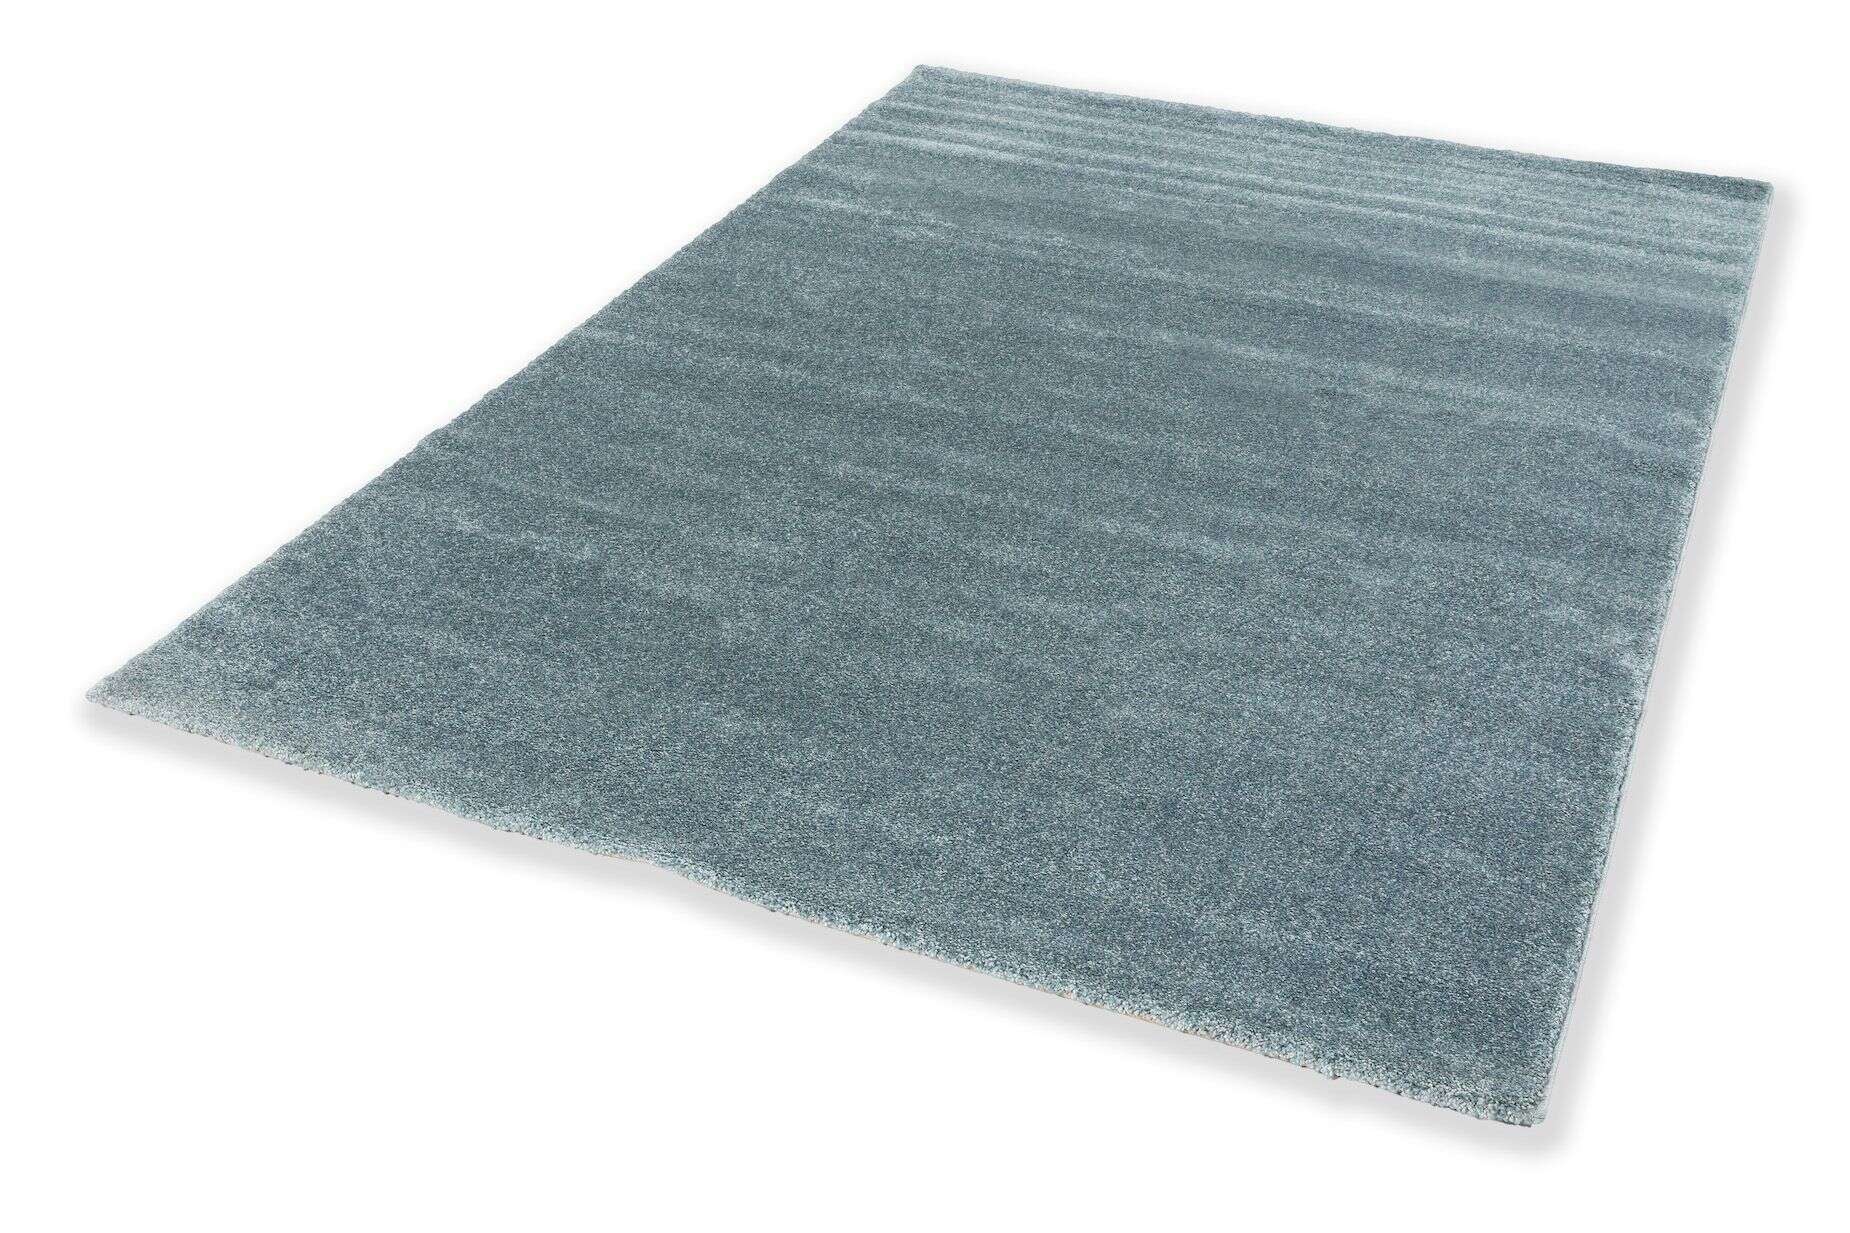  Teppich Pure 6307-190-024 im Wunschmaß